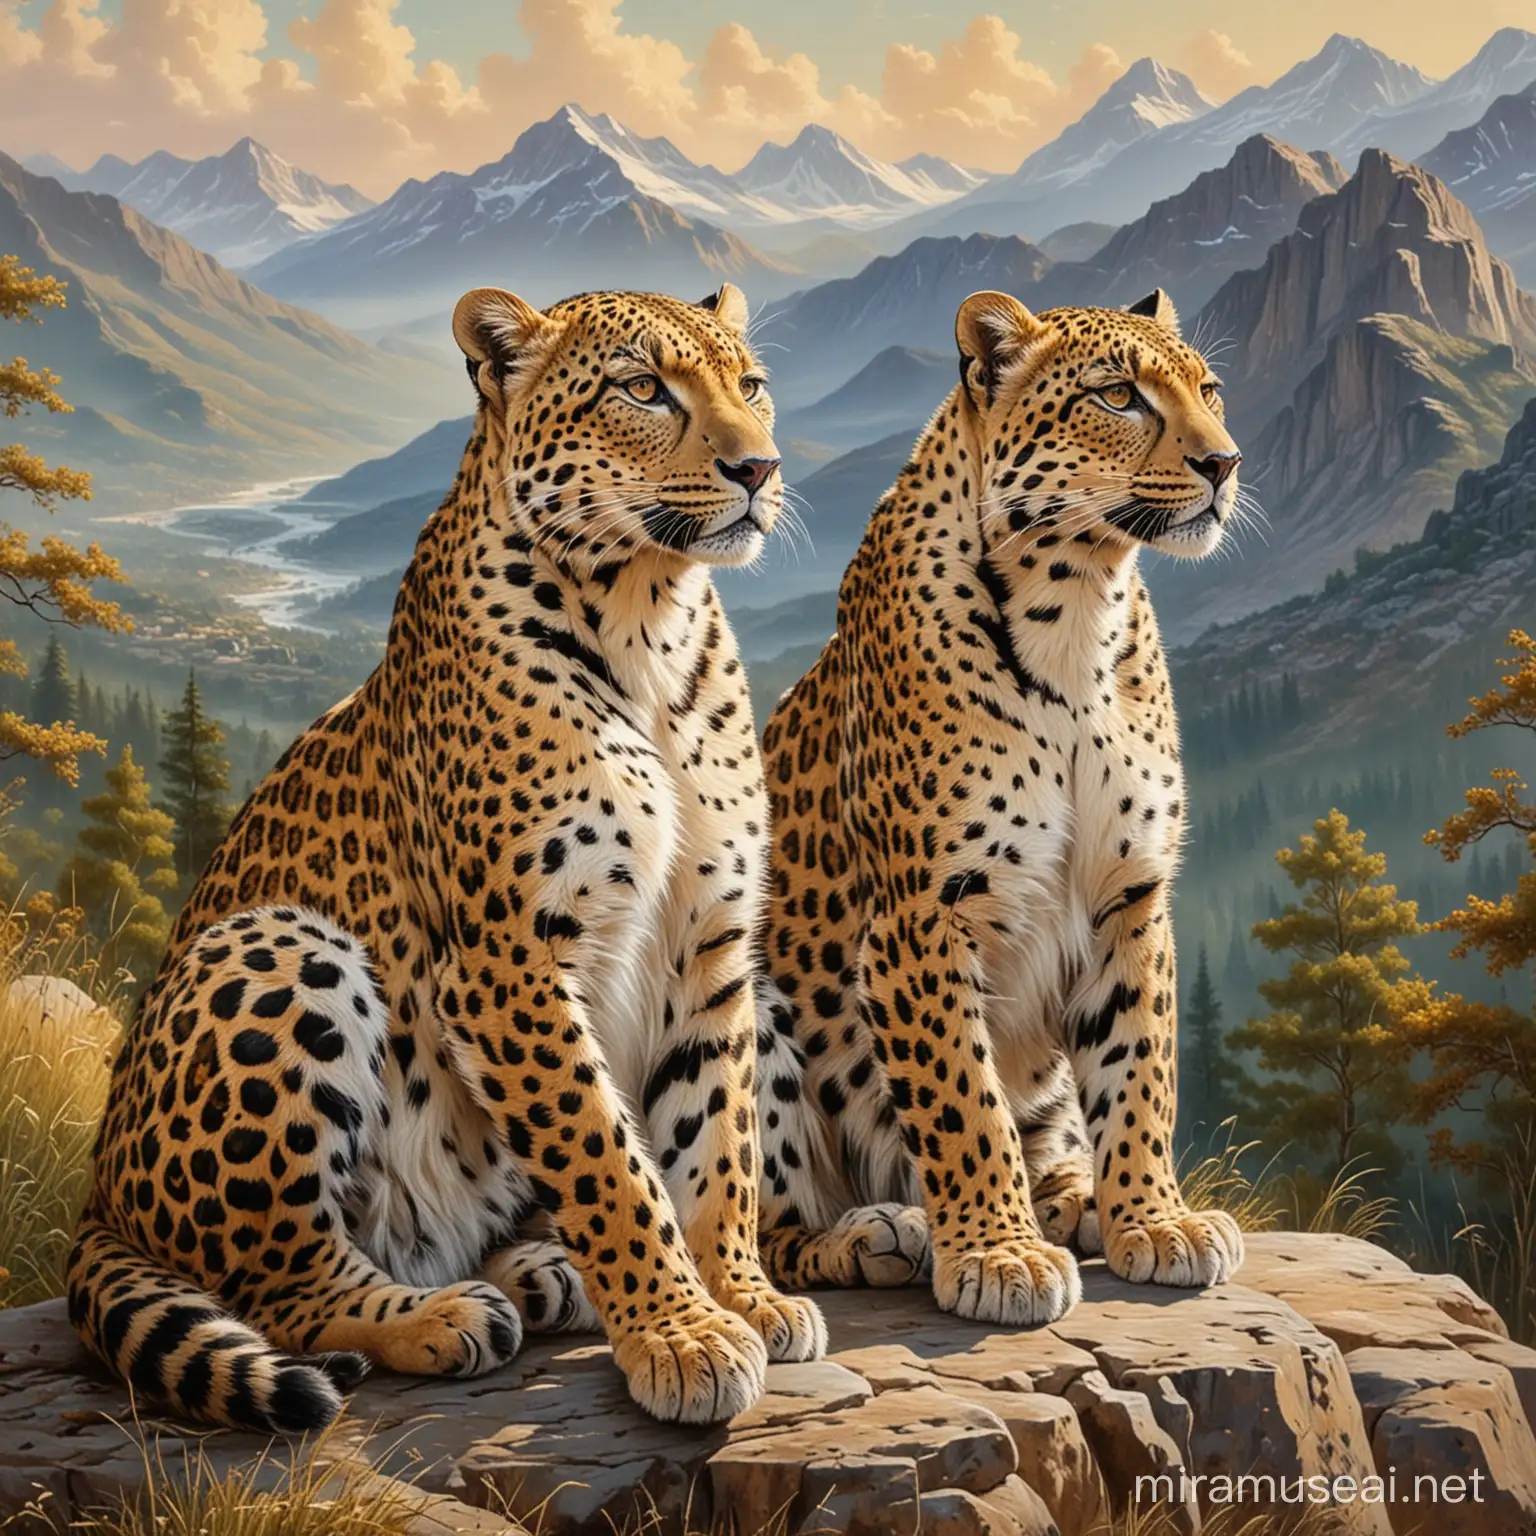 Стиль, живопись.Масляные краски.Он нес.Это очень красивых и чётких леопардов.Сидят на фоне гор.Рядом с друг с другом?